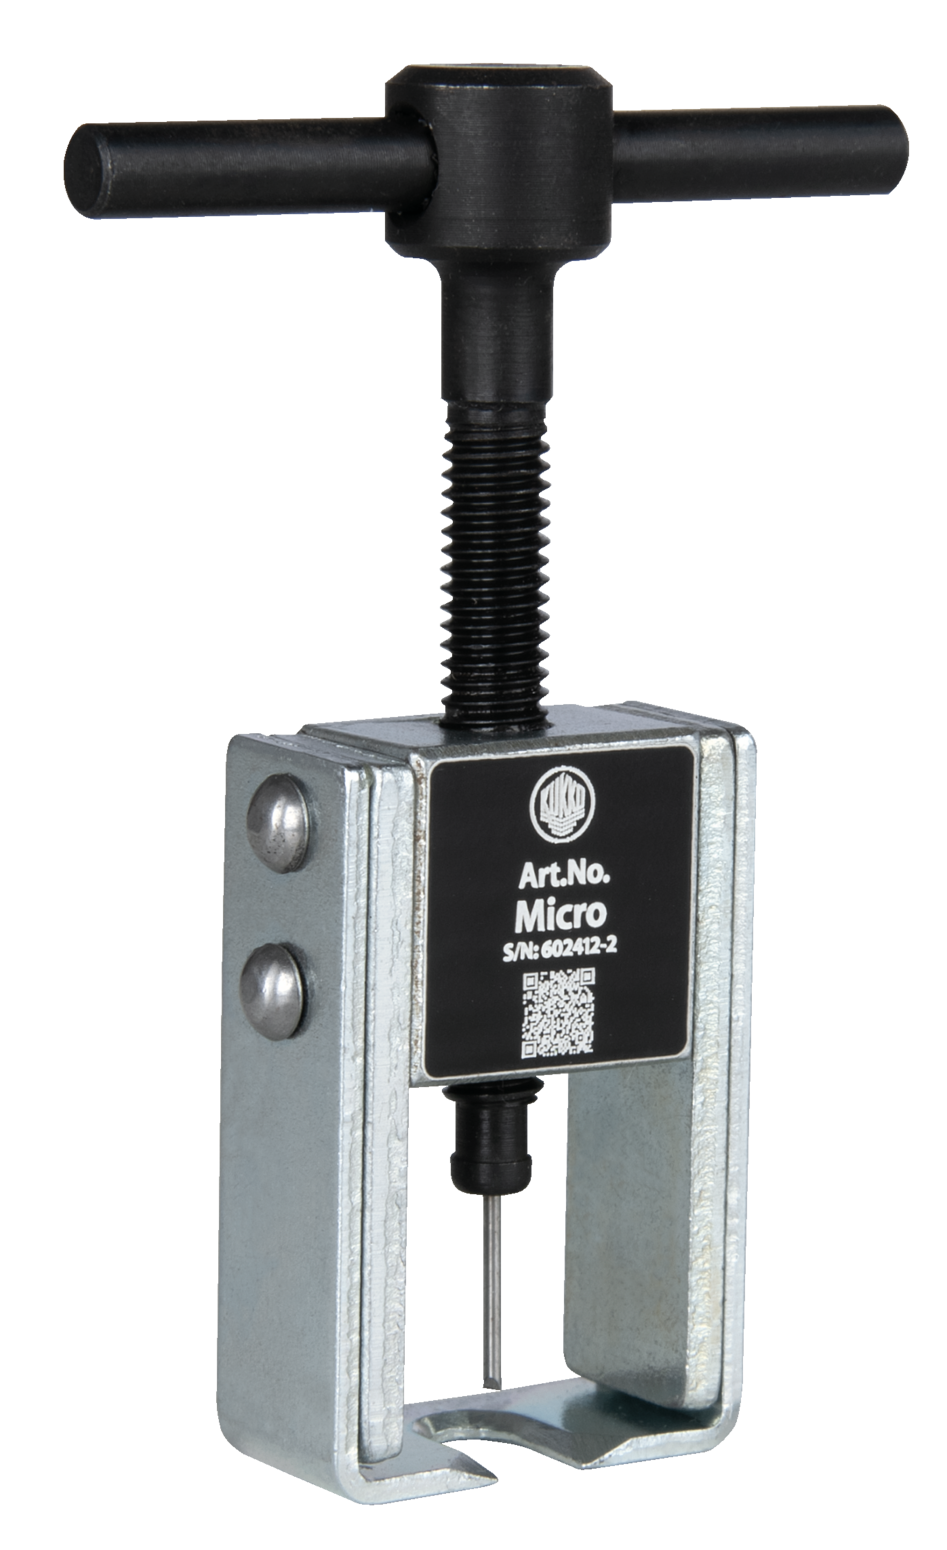 Der Micro-Abzieher "Micro" für Kleinteile und Modellbau zum Abziehen von Tachowellen, Manometern, Uhren und ähnlicher Teile